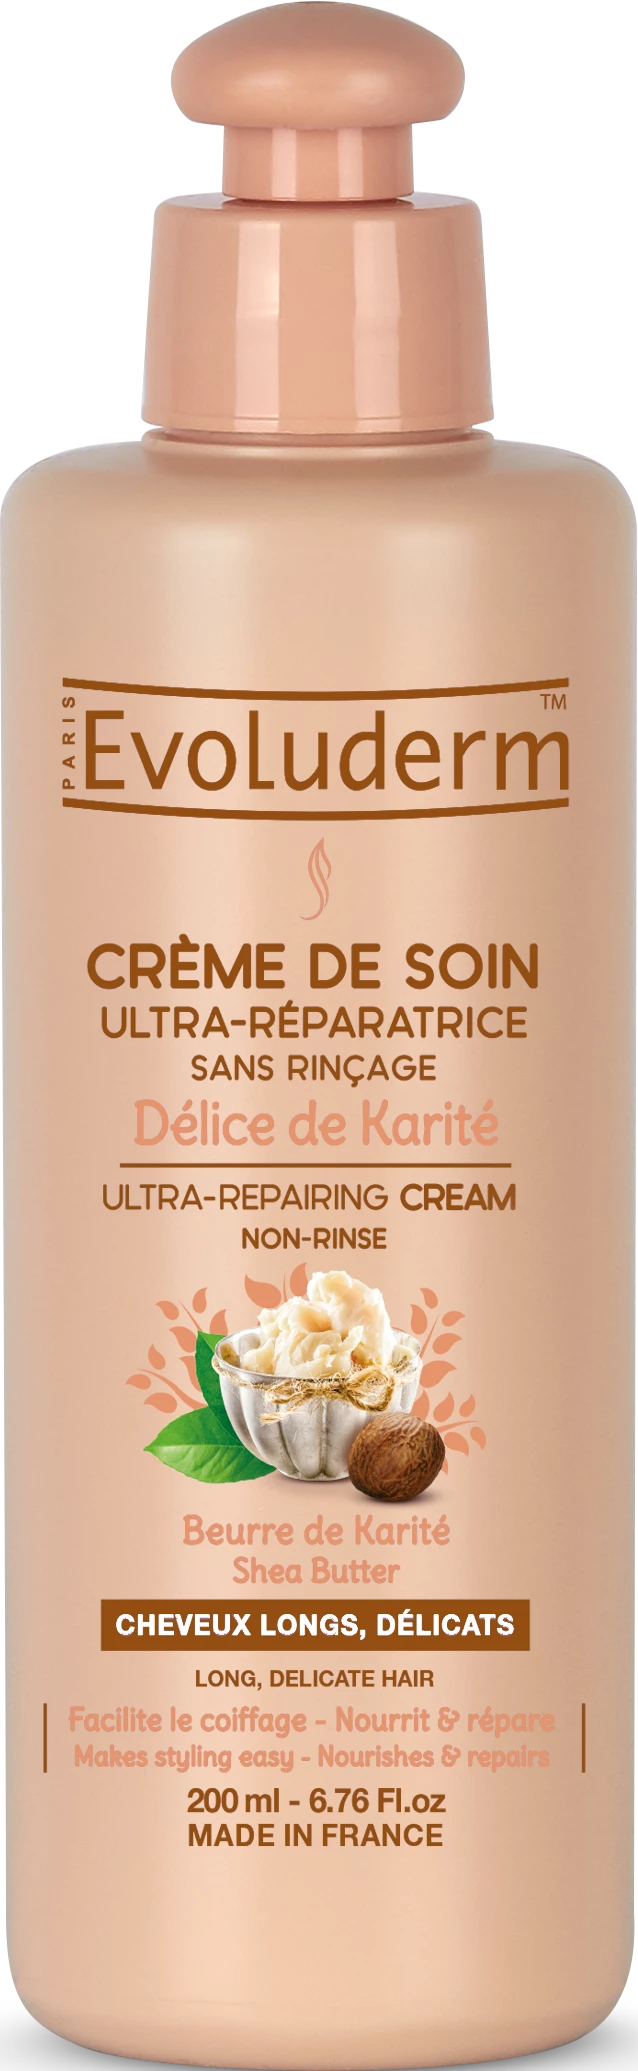 Crème Ultra Réparatrice Délice de Karité, 200ml - EVOLUDERM